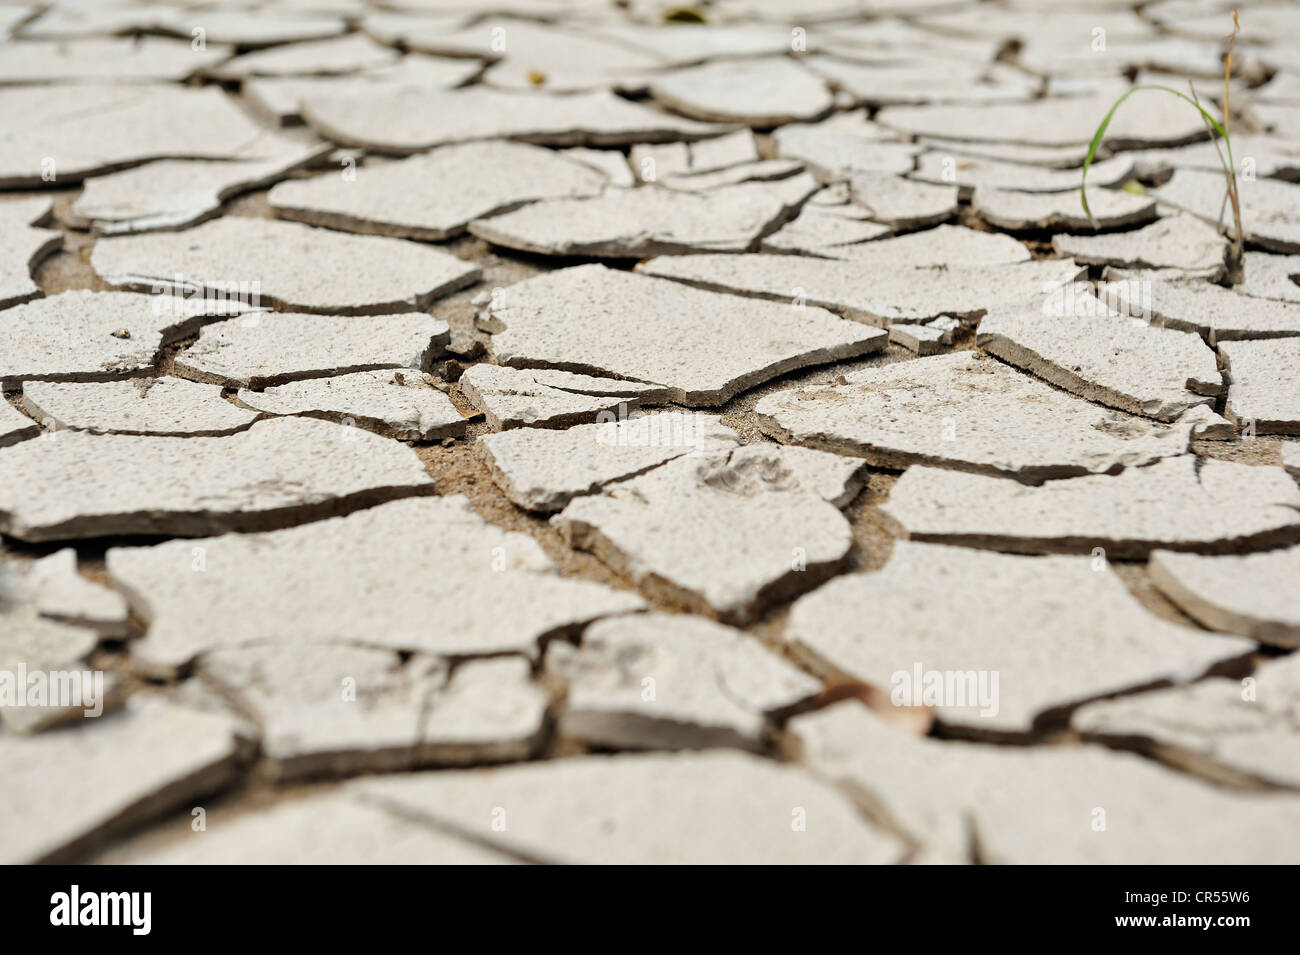 La boue sèche, craquelée, image symbolique pour le changement climatique Banque D'Images